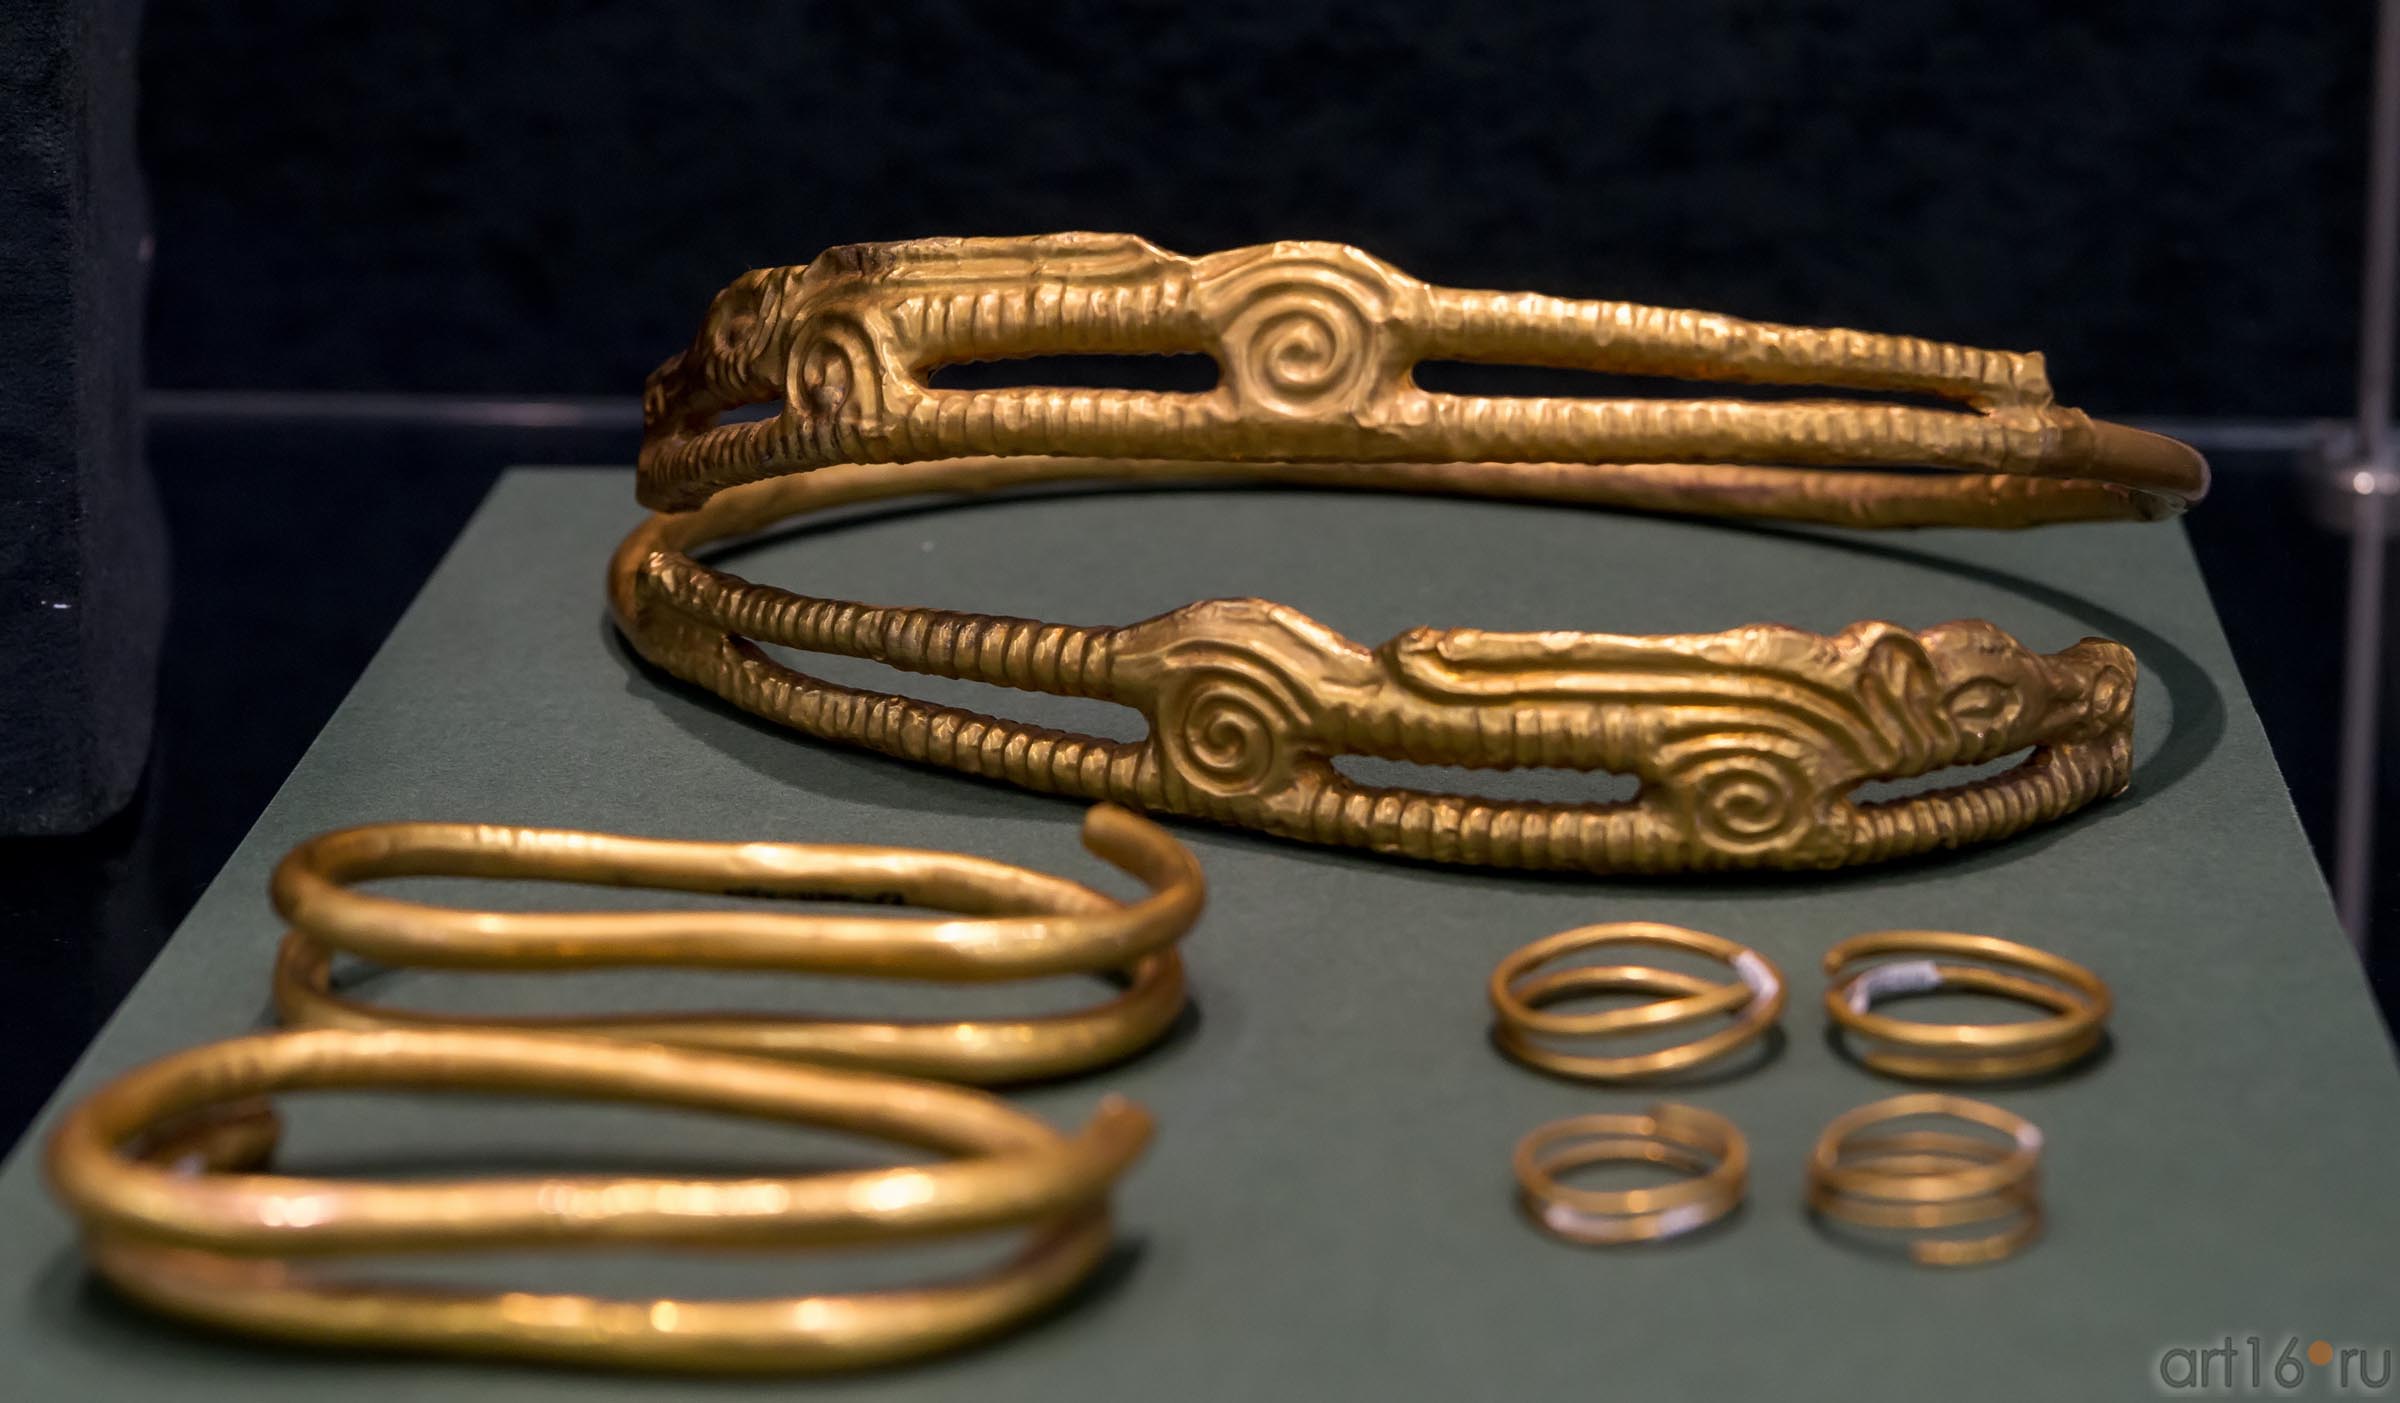 Комплект женских украшений (IV в. до н.э.)::Выставка «Кочевники Аркаимских степей»